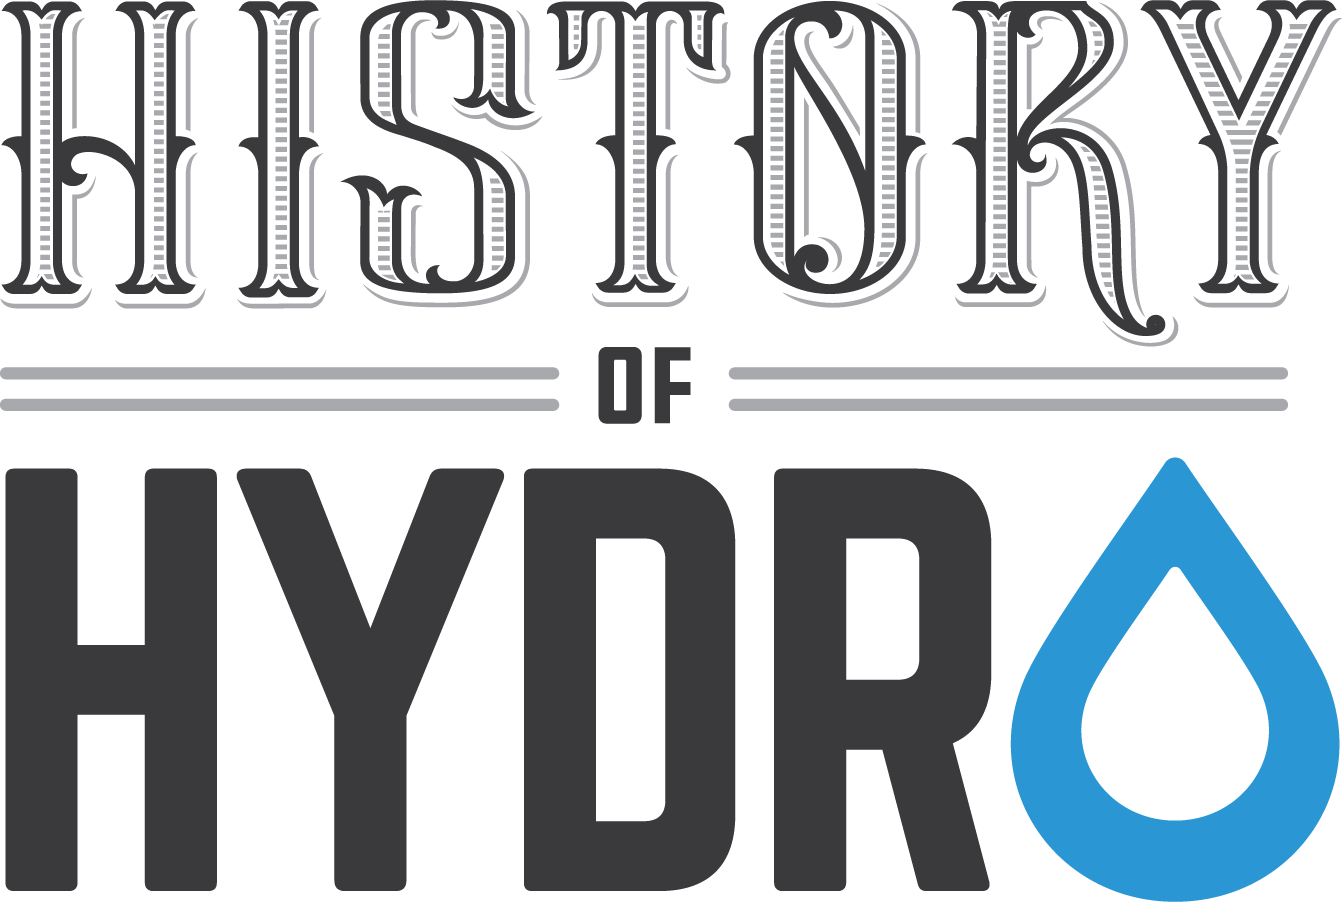 History of Hydro logo